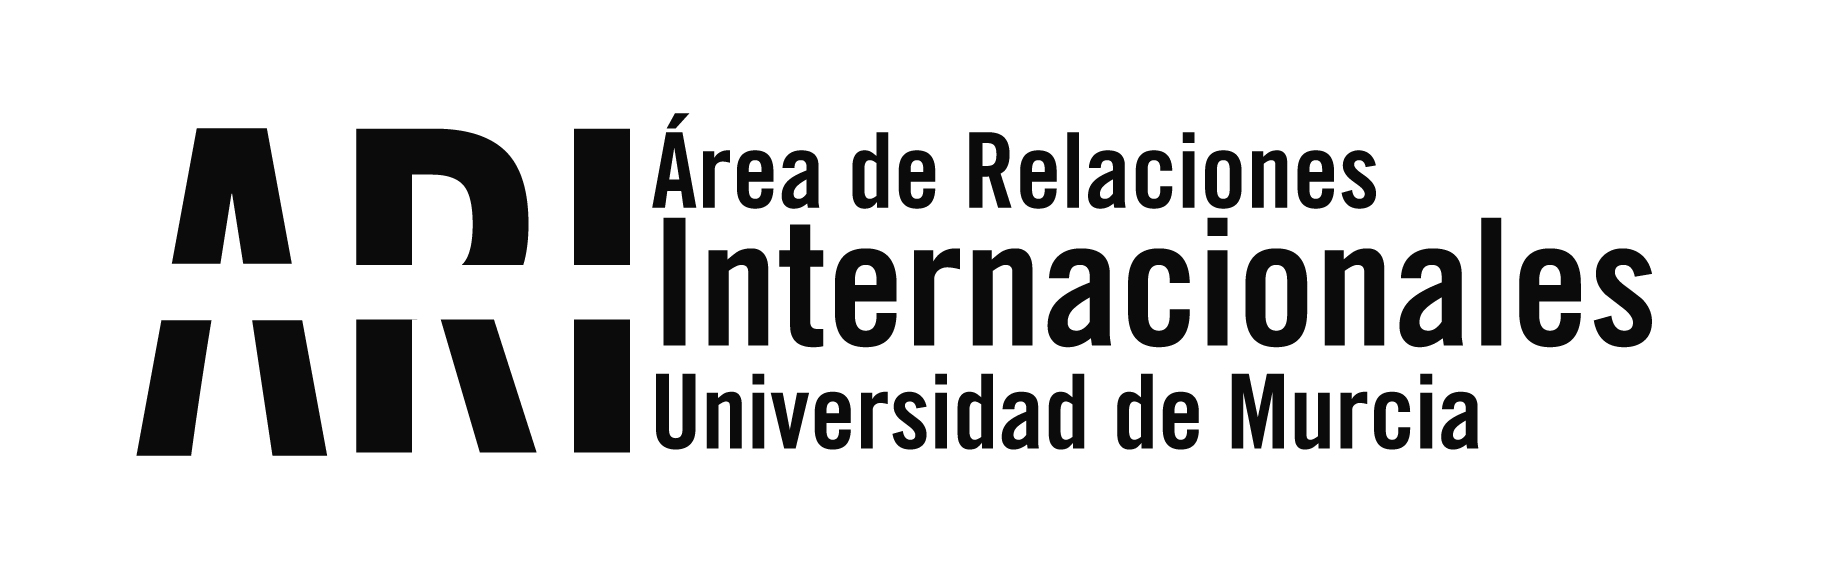 El ARI de la UMU imparte un curso de formación de Herramientas de Programas de Movilidad Internacional - Área de Relaciones Internacionales